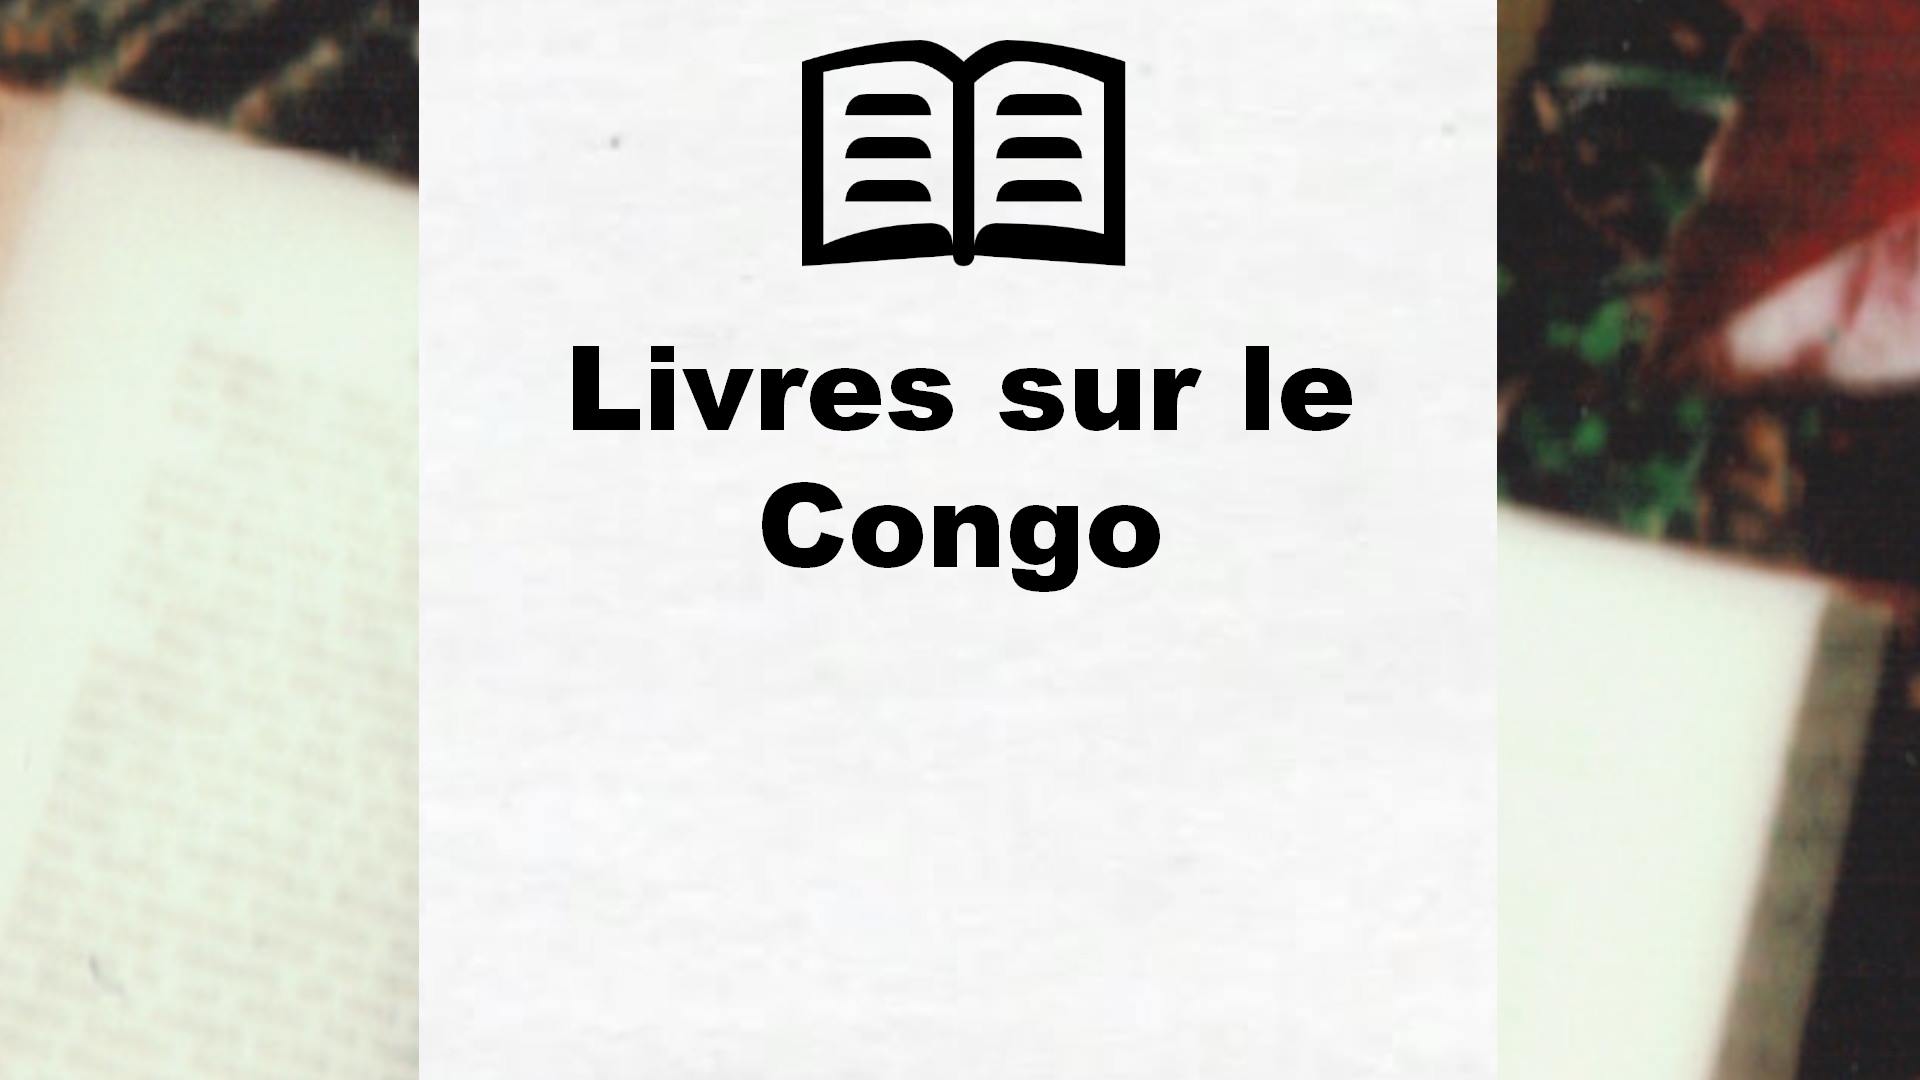 Livres sur le Congo